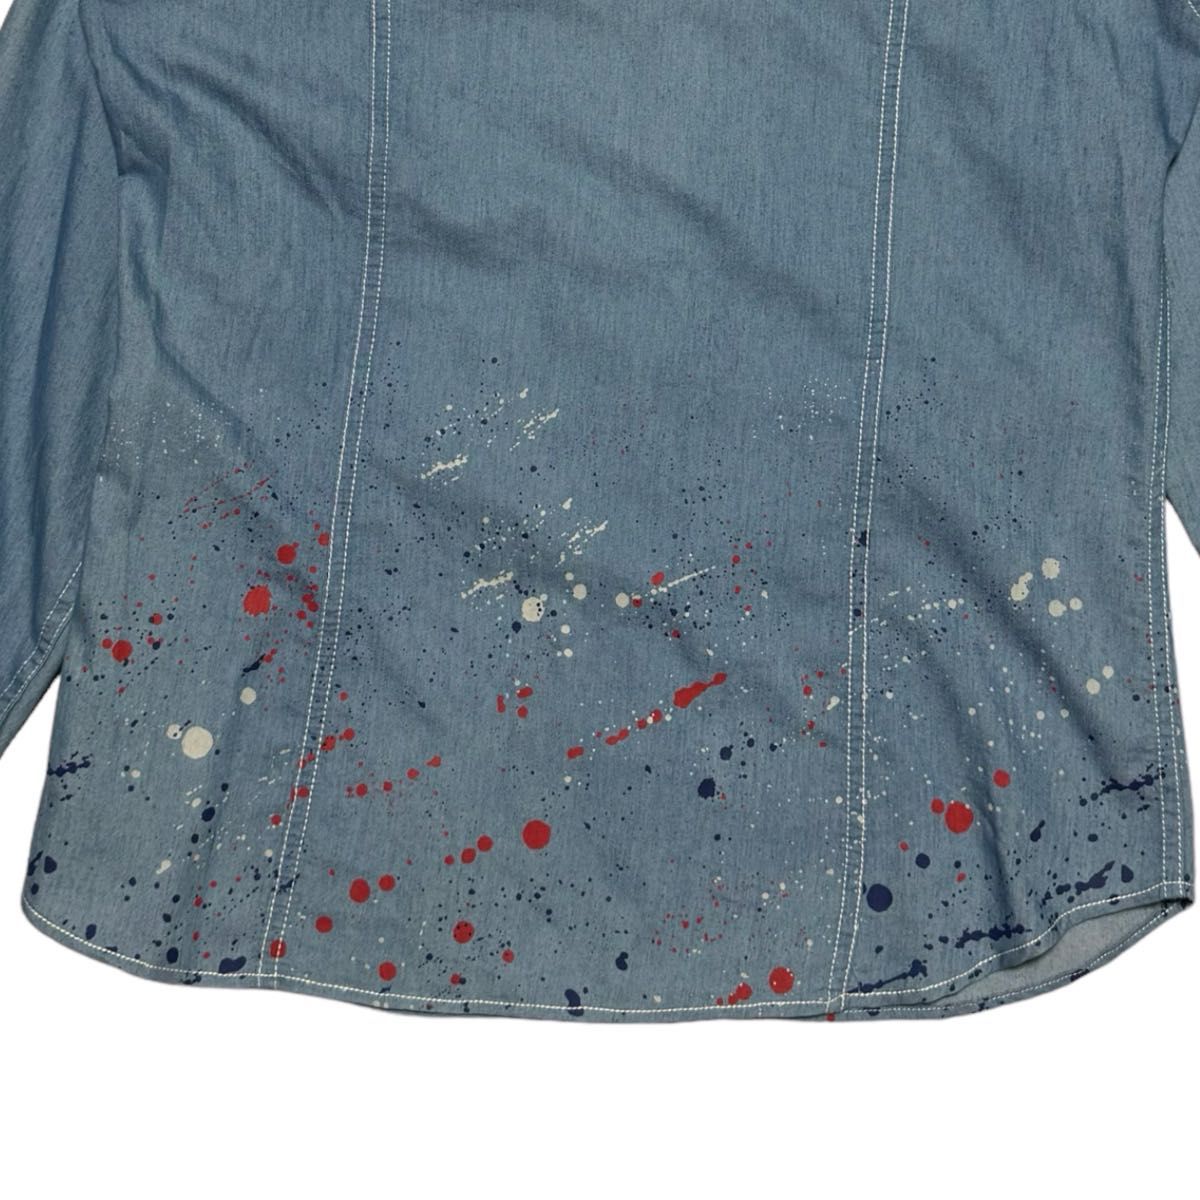 【定価1.6万】未着用品 LOVELESS ラブレス スプラッシュペイントシャツ サイズ2 M相当 ライトブルー スナップボタン